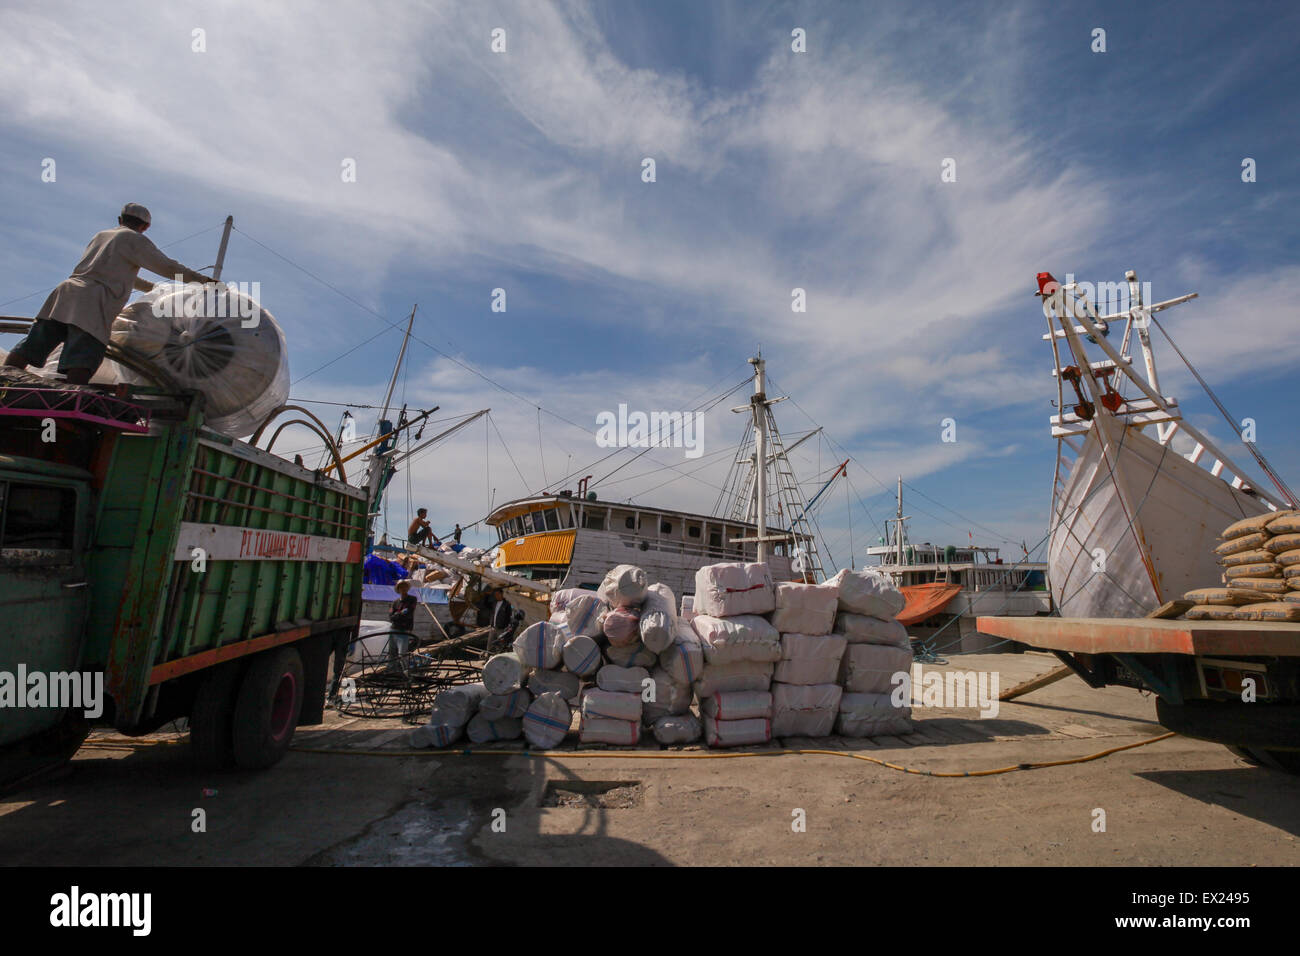 Eine Szene, die Fracht, Lastwagen, traditionelle pinisi-Schiffe und Arbeiter an einem heißen Tag im Hafen von Paotere, Makassar, South Sulawesi, Indonesien zeigt. Stockfoto